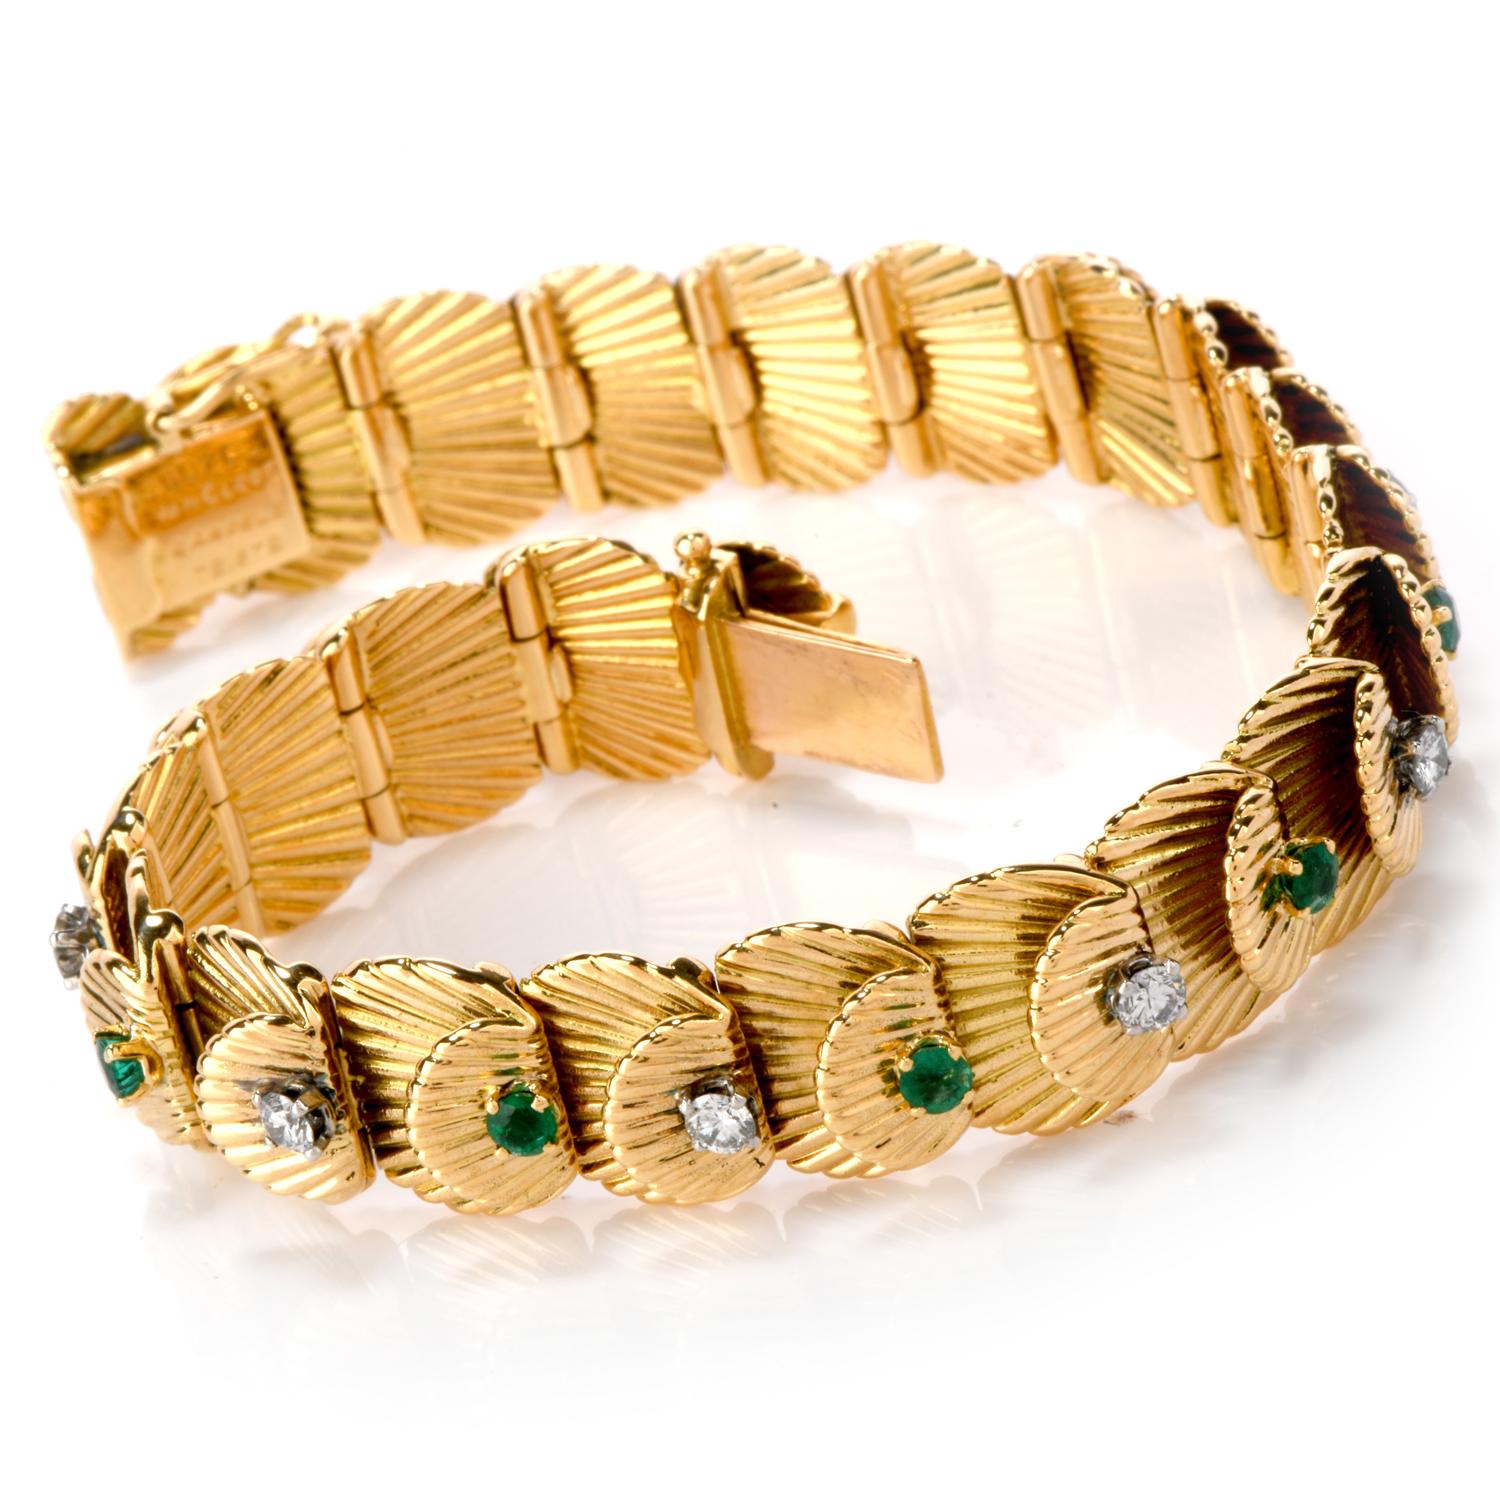 Explorez votre nature capricieuse et charmante, avec ce glorieux Van Cleef & Arpels Vintage Diamond Emerald 18K Gold.

Bracelet. Ce bracelet français de Van Cleef & Arpels en émeraudes et diamants présente des motifs en forme de coquillage avec une